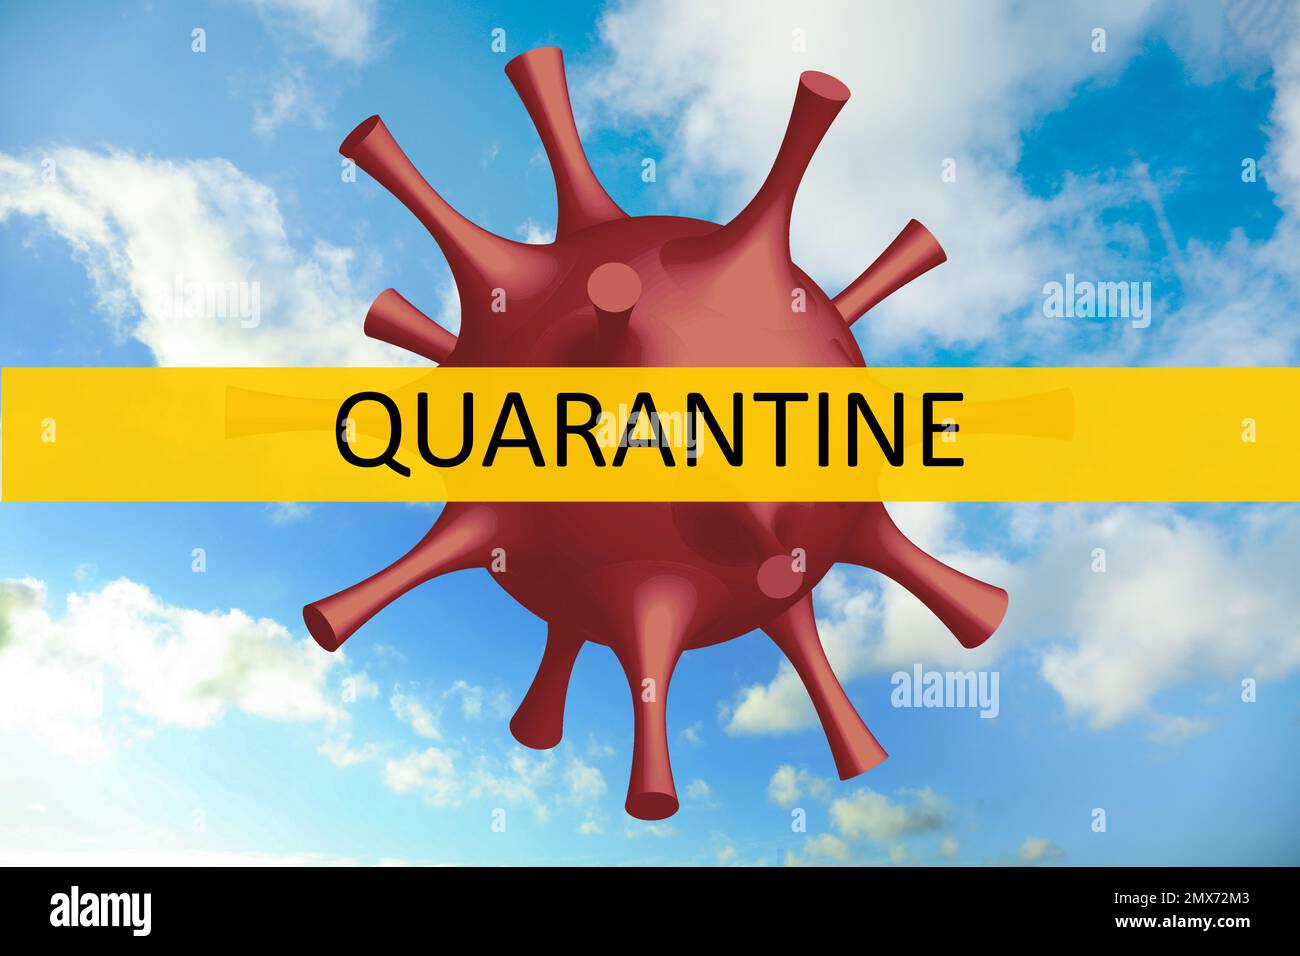 Closure of air traffic through quarantine during coronavirus outbreak. Illustration of virus against blue sky Stock Photo